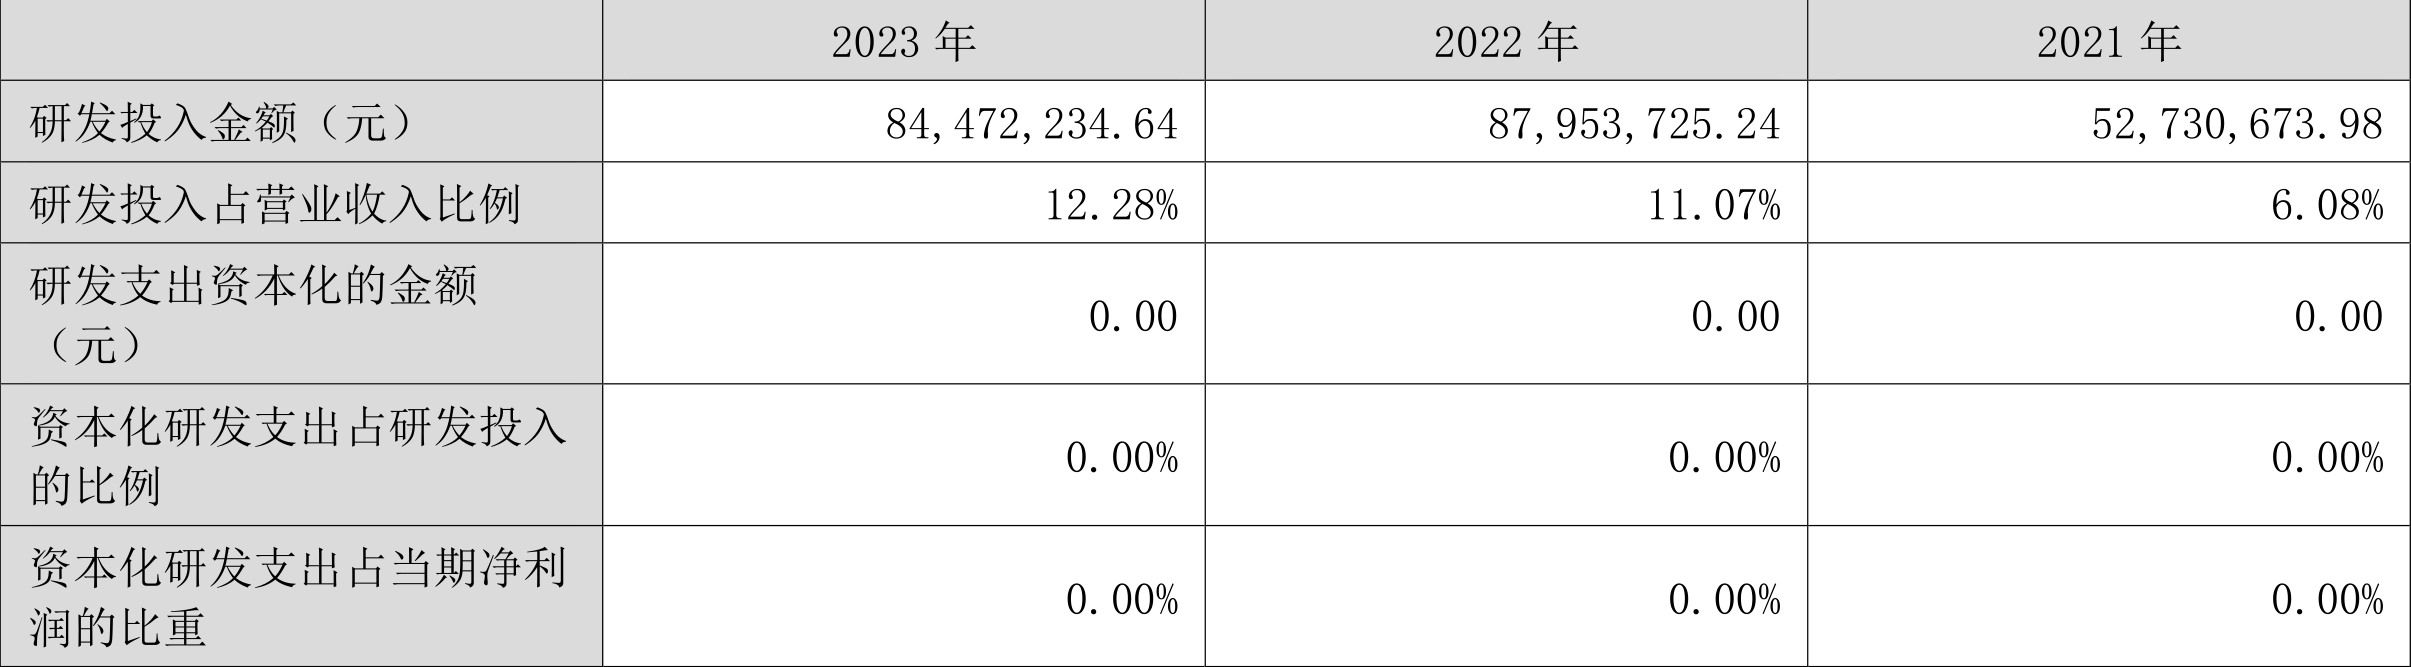 安联锐视：2023年净利润9250.73万元 同比下降9.86%